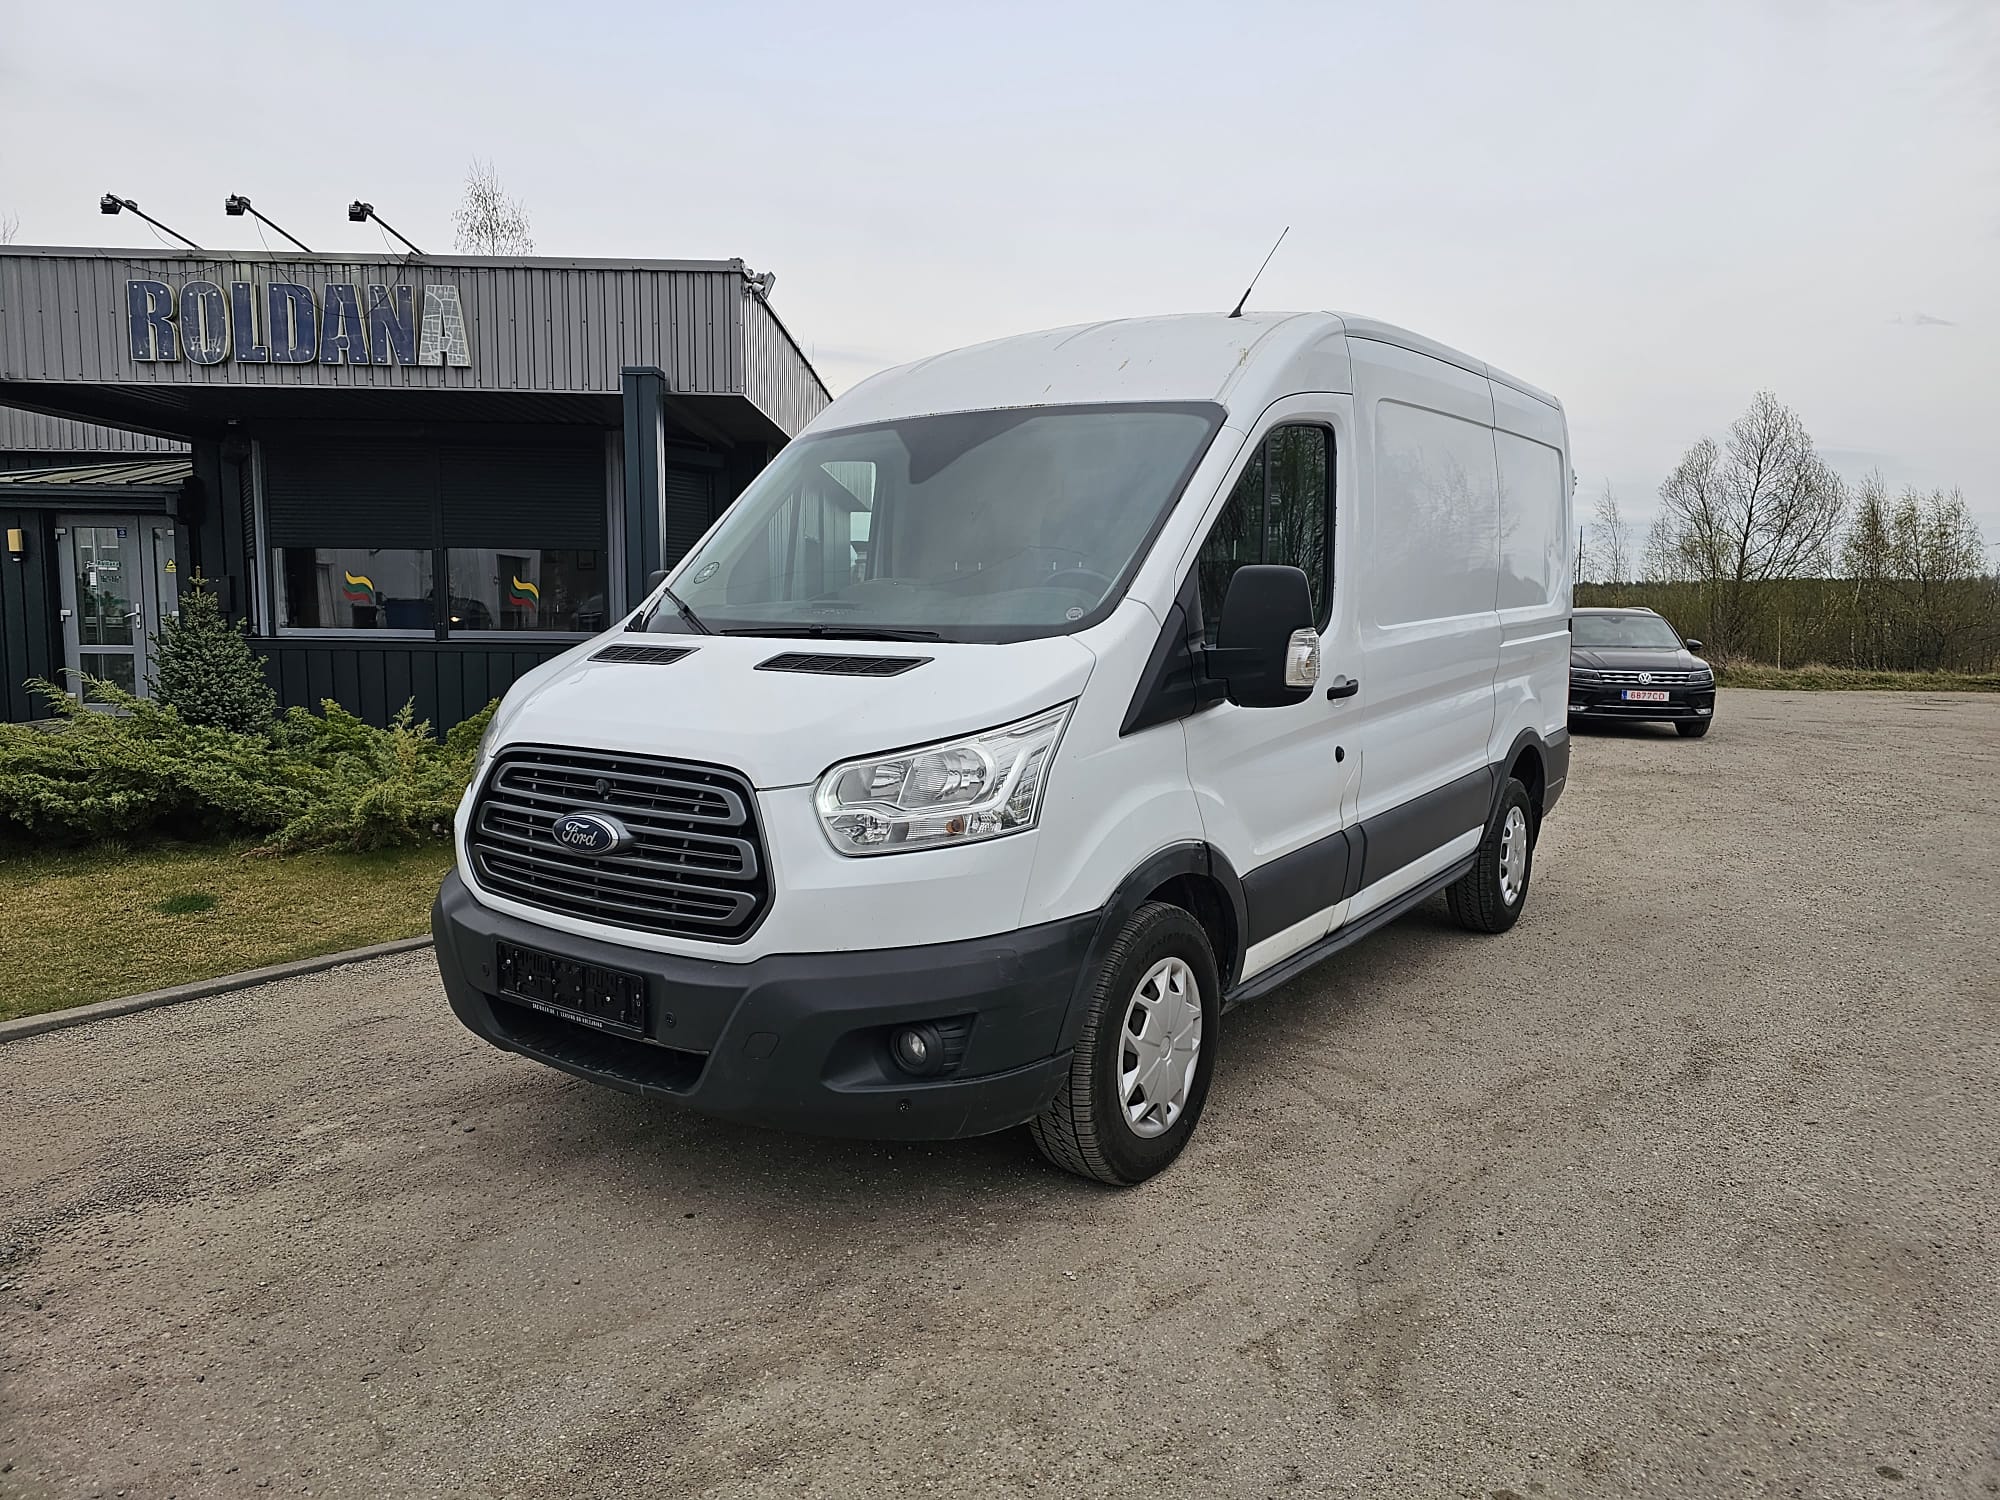 Ford Transit, 2.0 l., krovininis mikroautobusas, 2018-04/naudoti automobiliai/Roldana